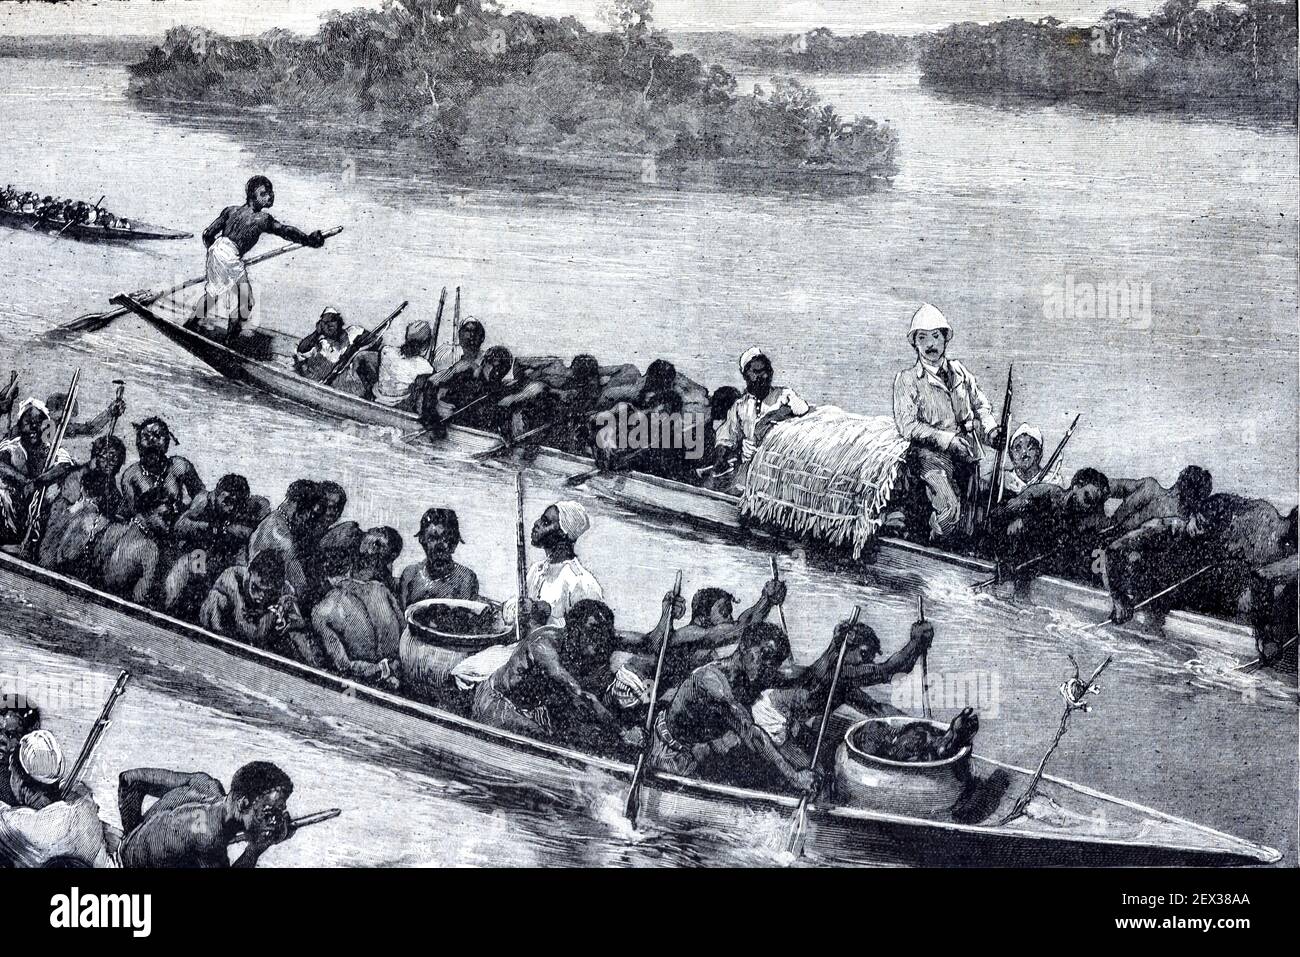 Kannibalen mit Töpfen menschlichen Fleisches auf Dugout Kanu auf African River (Kanu) Überholt von einem europäischen Entdecker im scond Canoe Africa 1896 Vintage Illustration oder Gravur Stockfoto